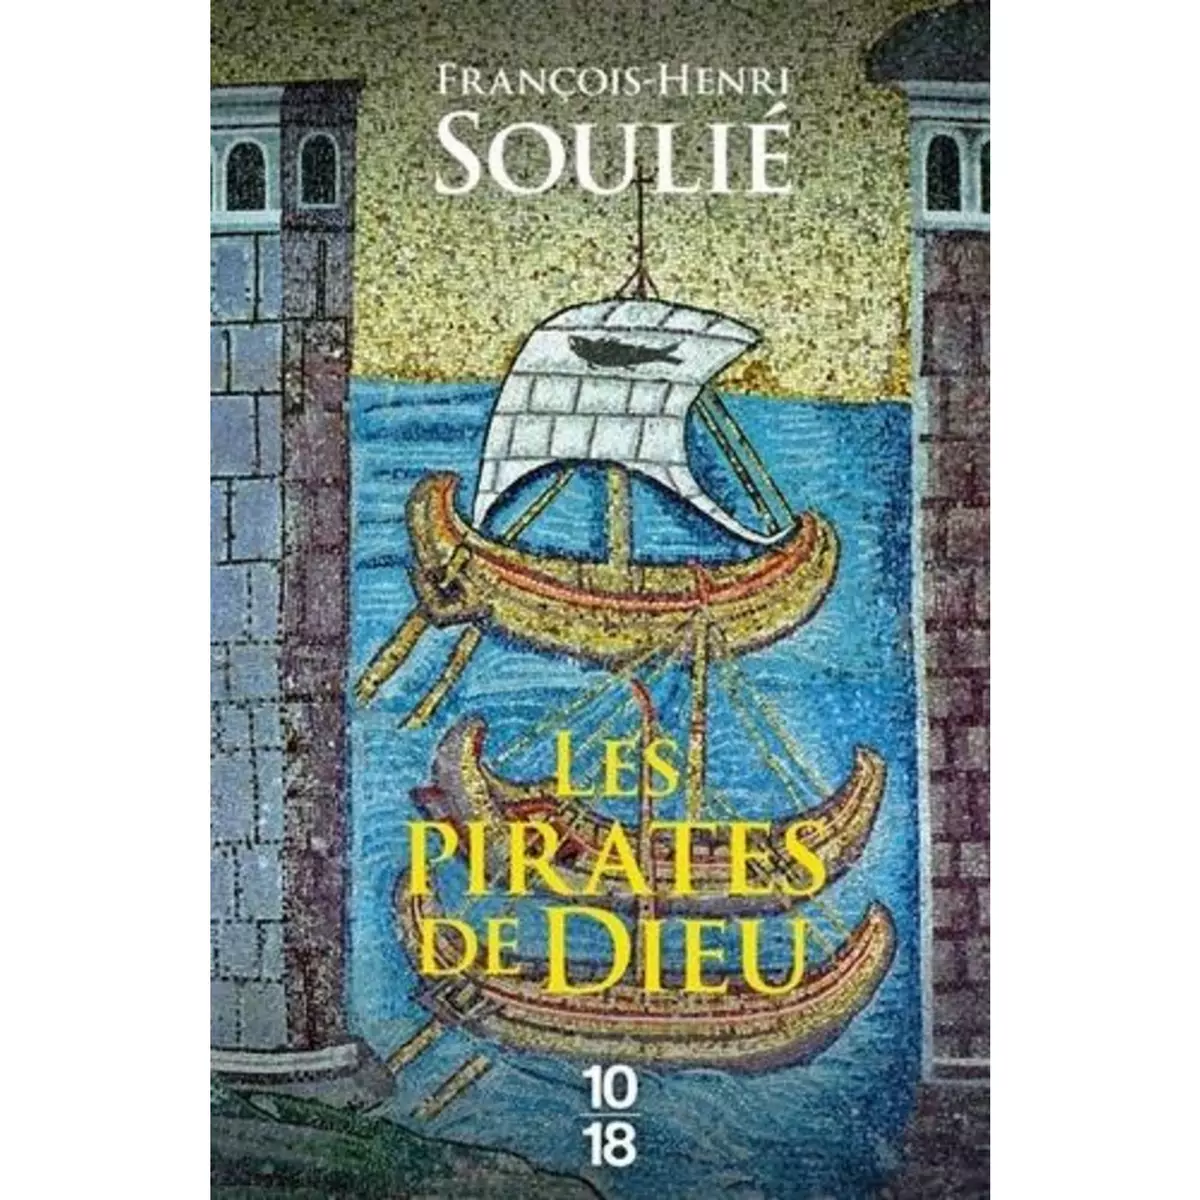  LES PIRATES DE DIEU, Soulié François-Henri